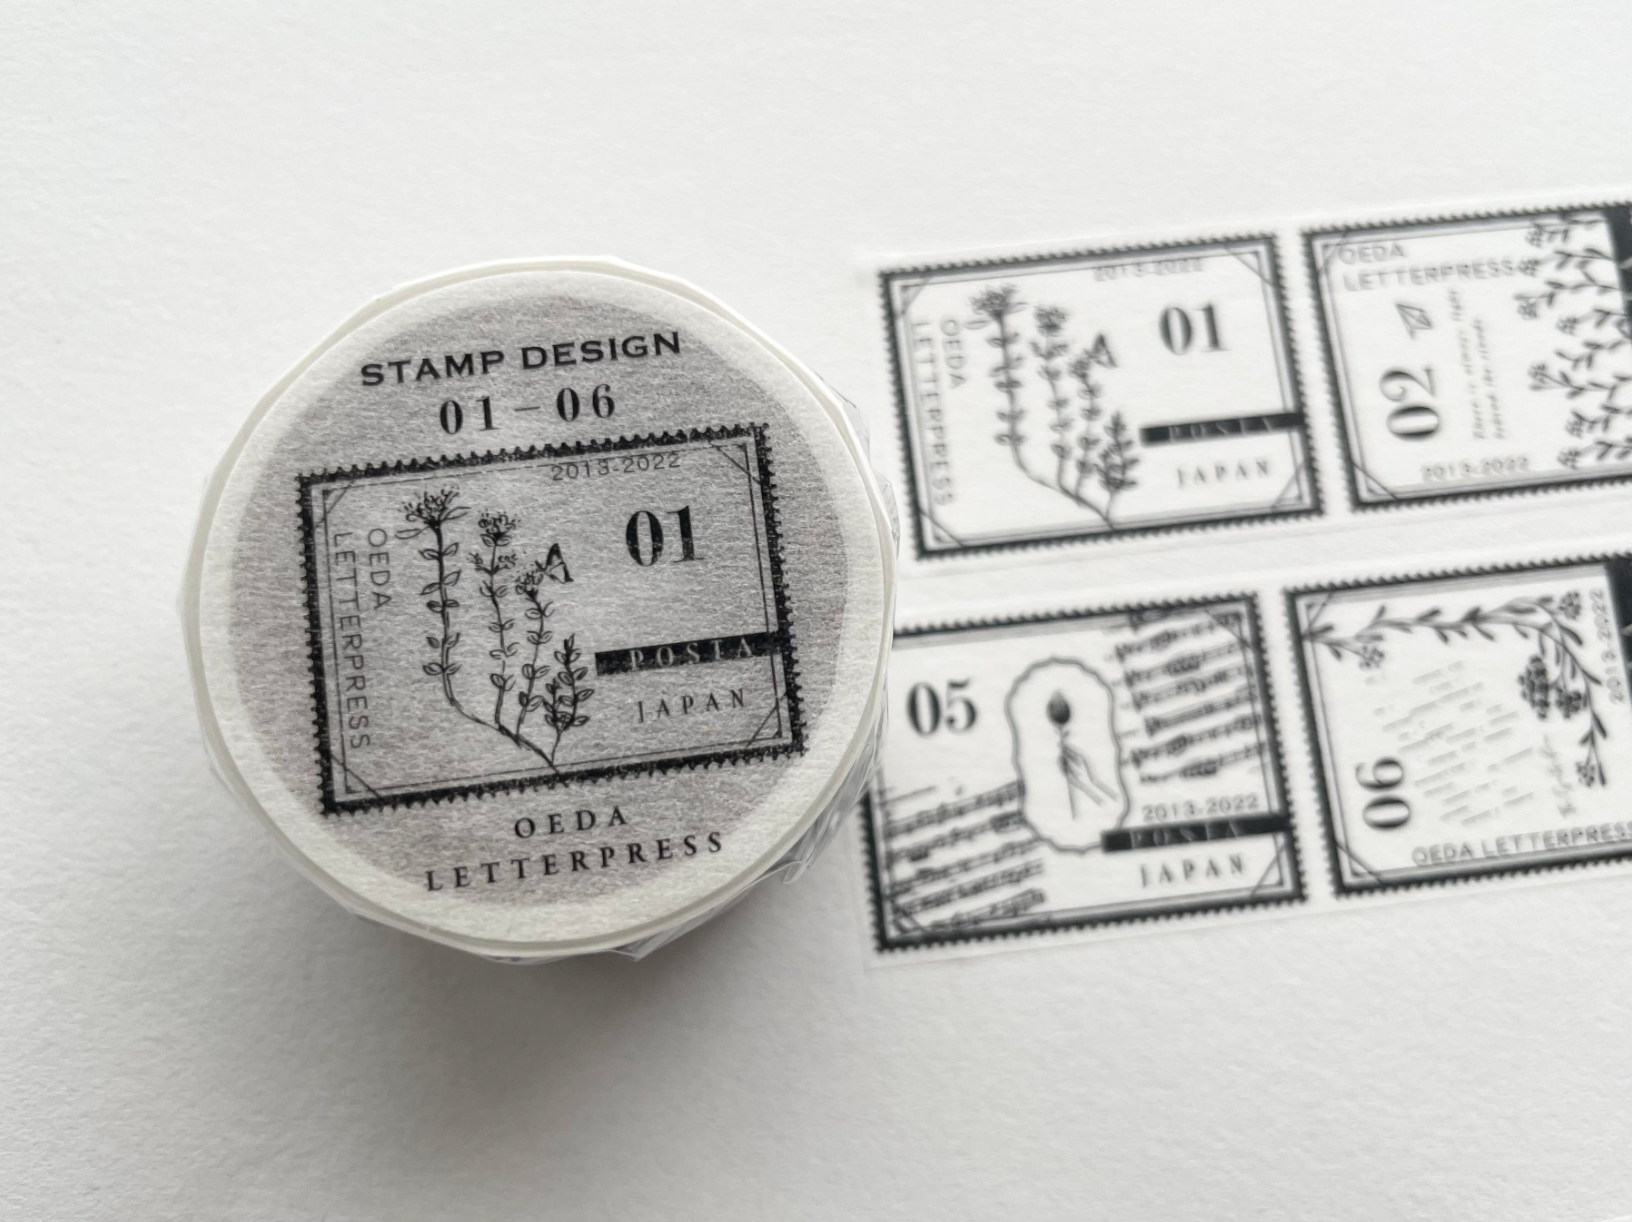 Masking tape [Stamp 01-06 / Stamp 07-12] 